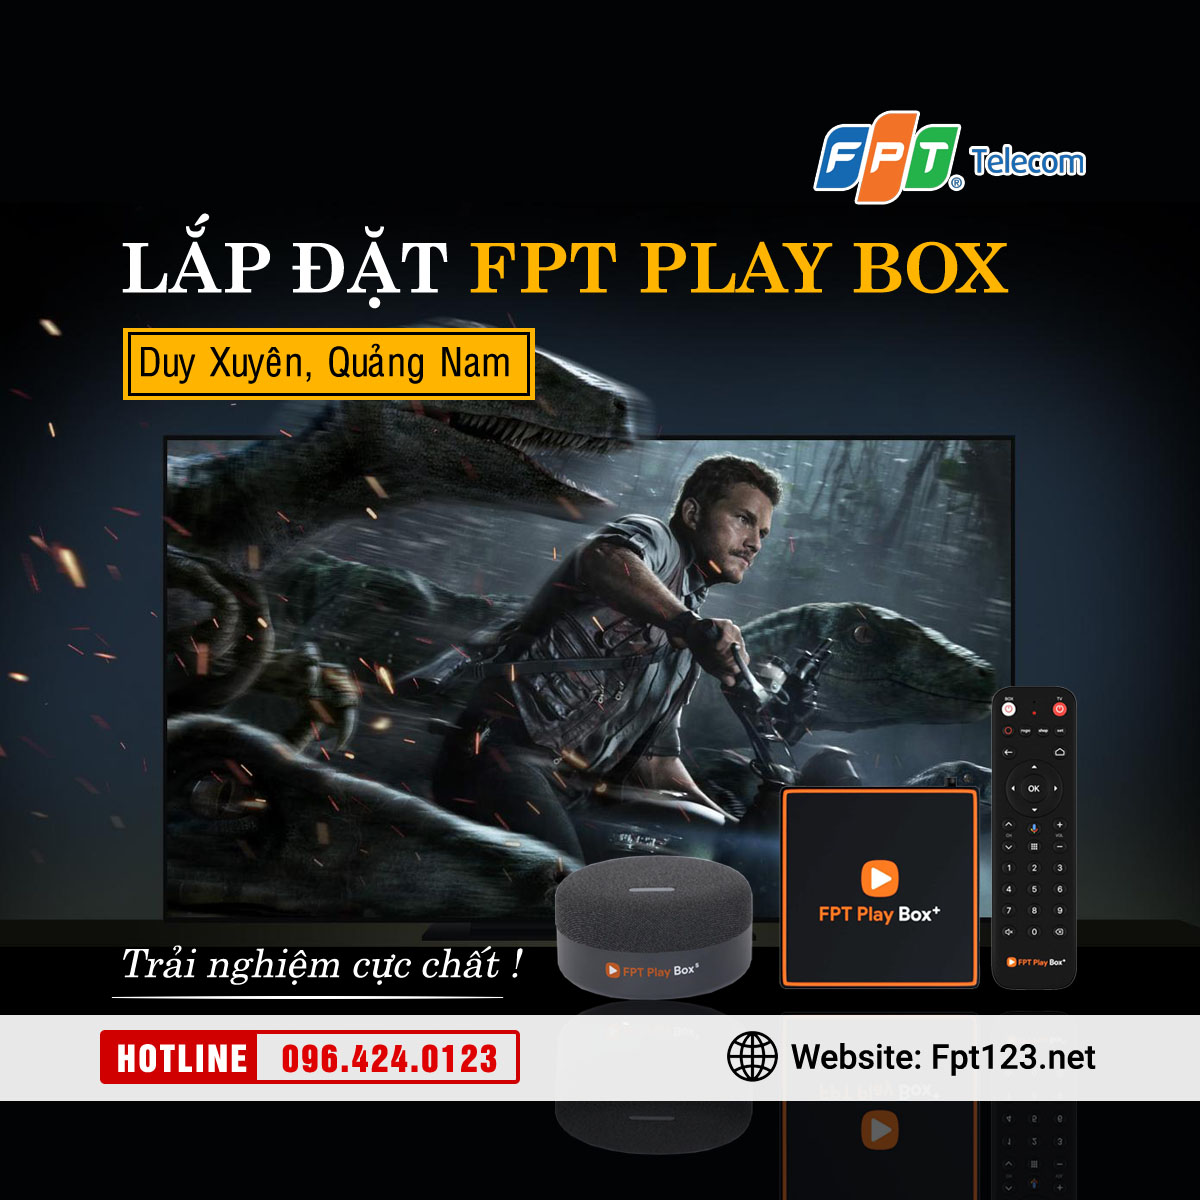 Lắp đặt FPT Play Box tại huyện Duy Xuyên, Quảng Nam